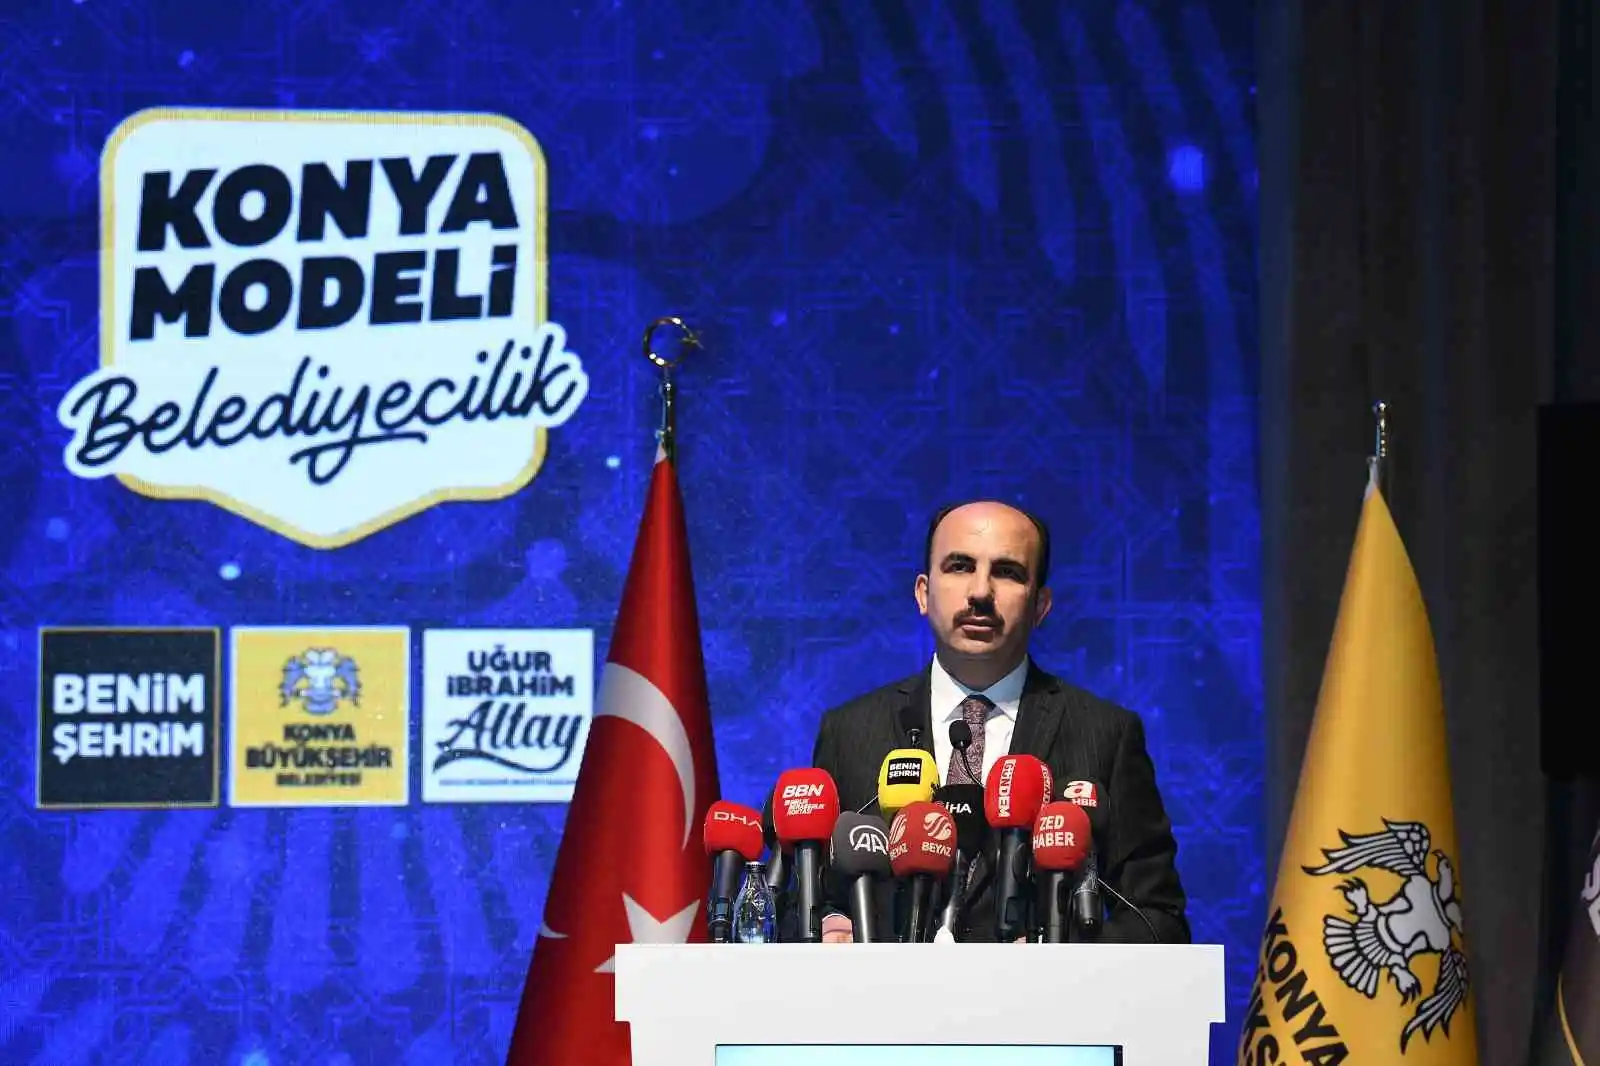 Başkan Altay: “Konyamızı Türkiye Yüzyılı’nın incisi yapmaya kararlıyız”
